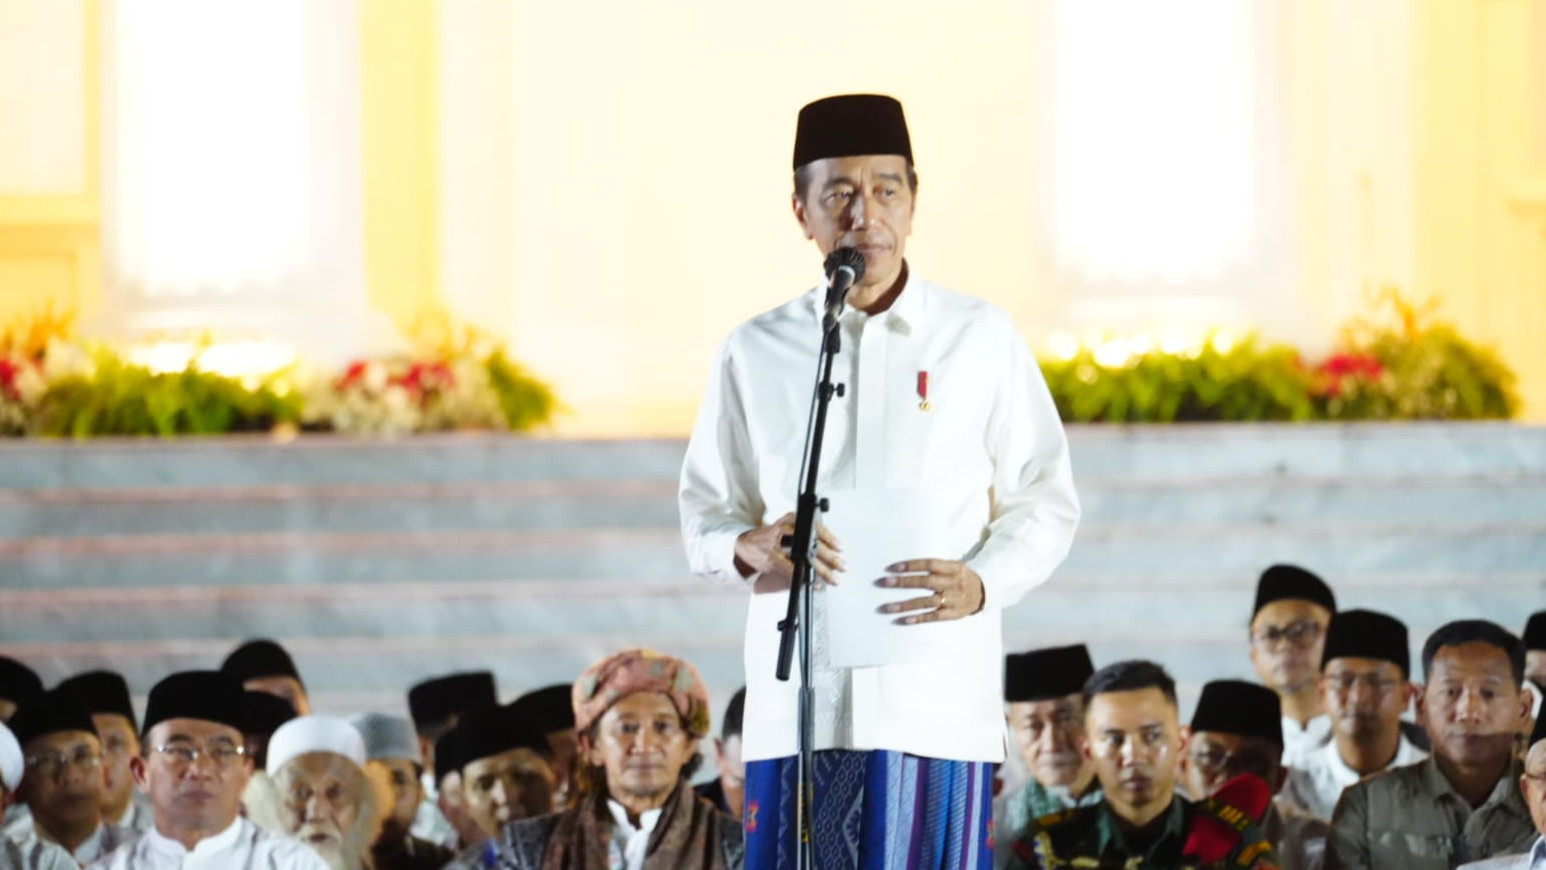 Jelang Akhir Masa Jabatan Jokowi Minta Maaf ke Rakyat Indonesia, Ray Rangkuti : Minta Maaf dari Apa?